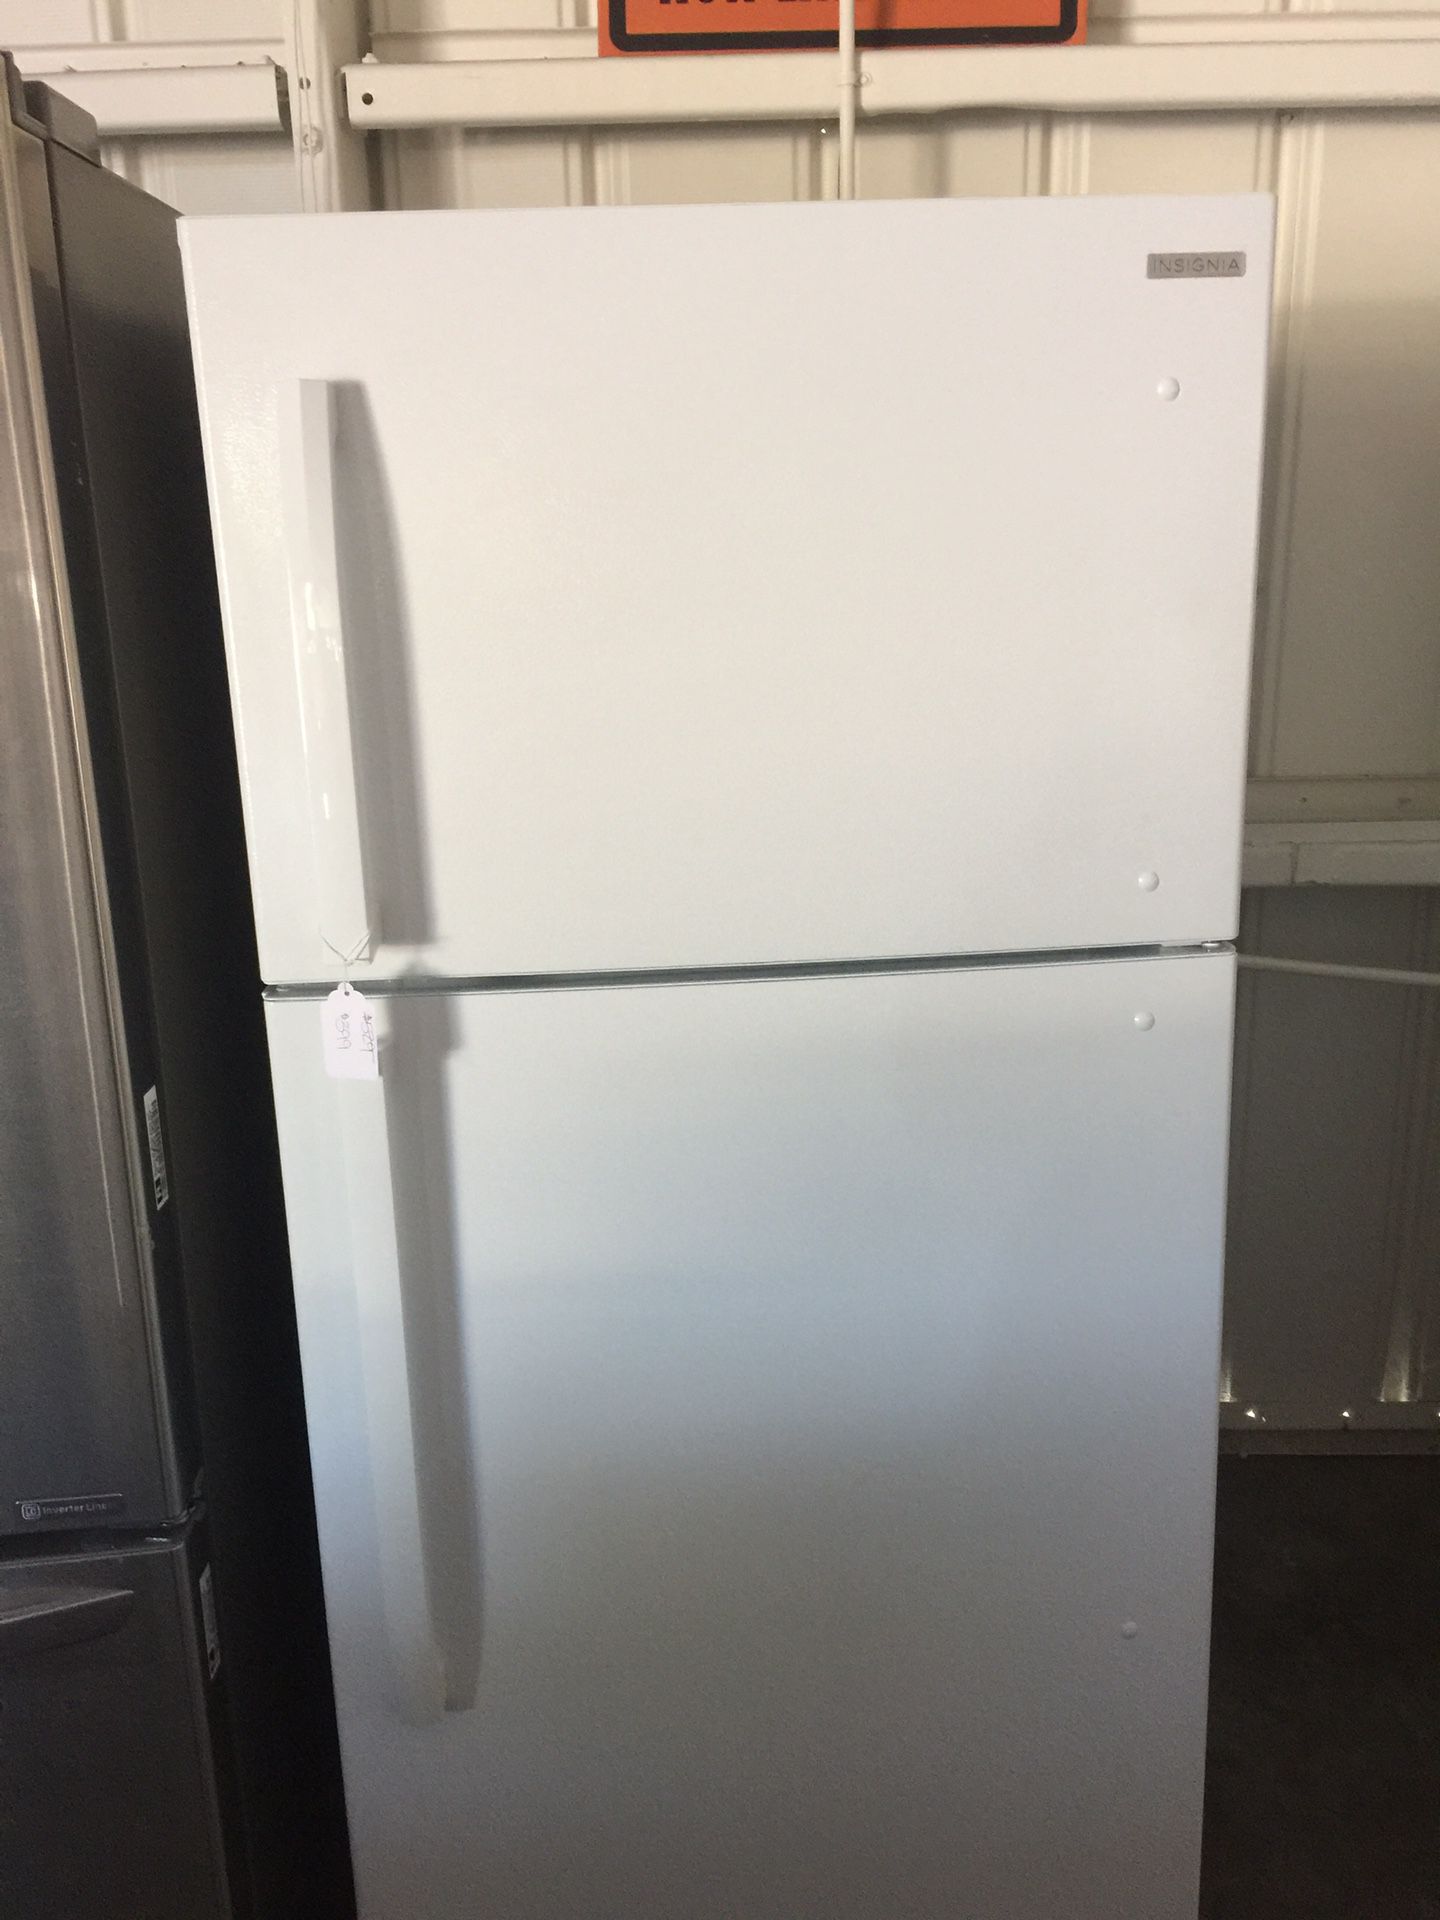 Insignia Top freezer fridge